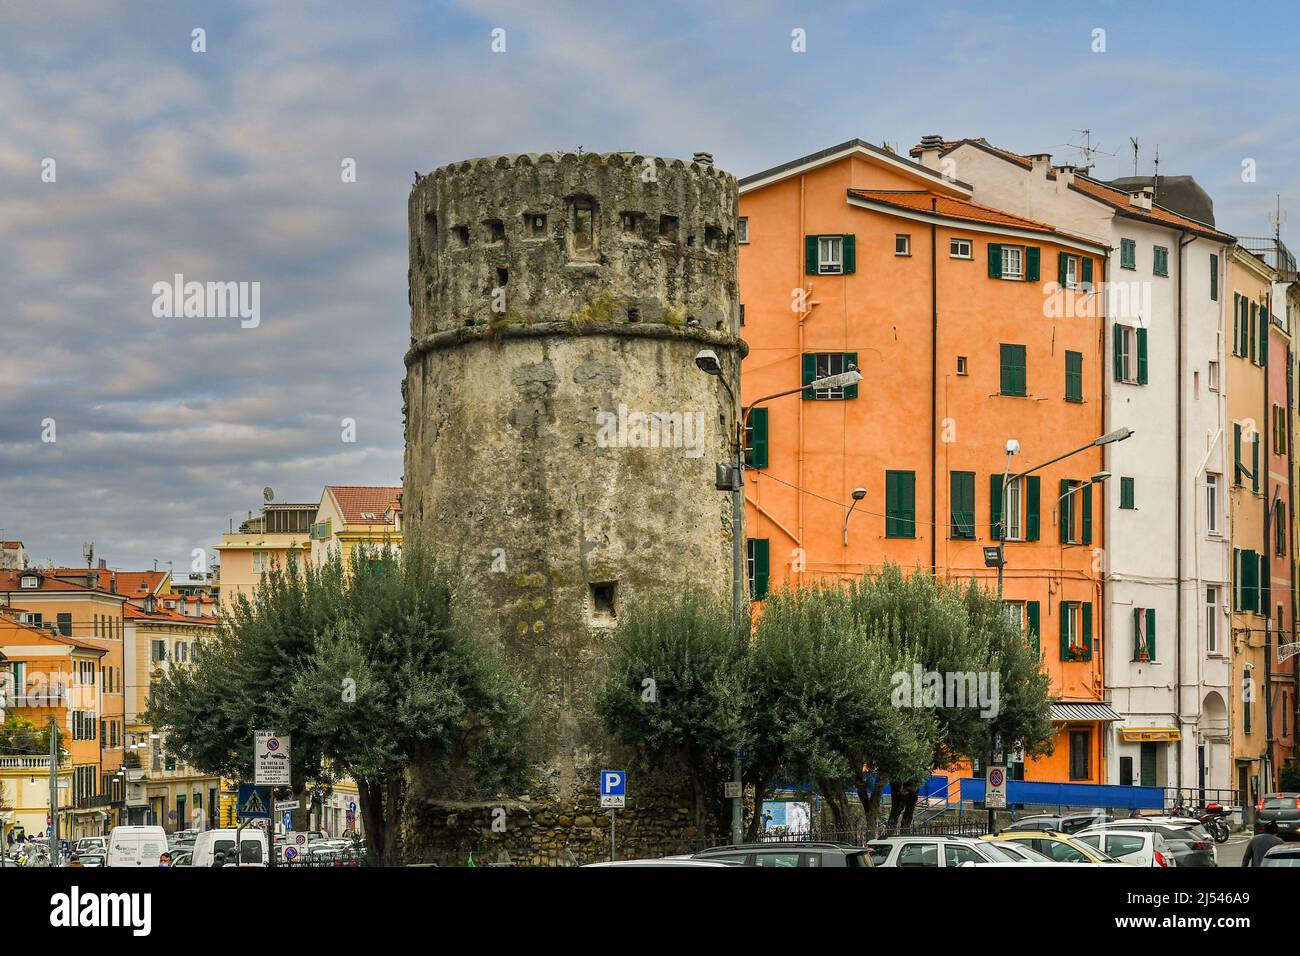 La Torre di Ciapela è un antico baluardo difensivo costruito dai Genovesi intorno al 1550 contro gli attacchi dei pirati, Sanremo, Imperia, Liguria, Italia Foto Stock